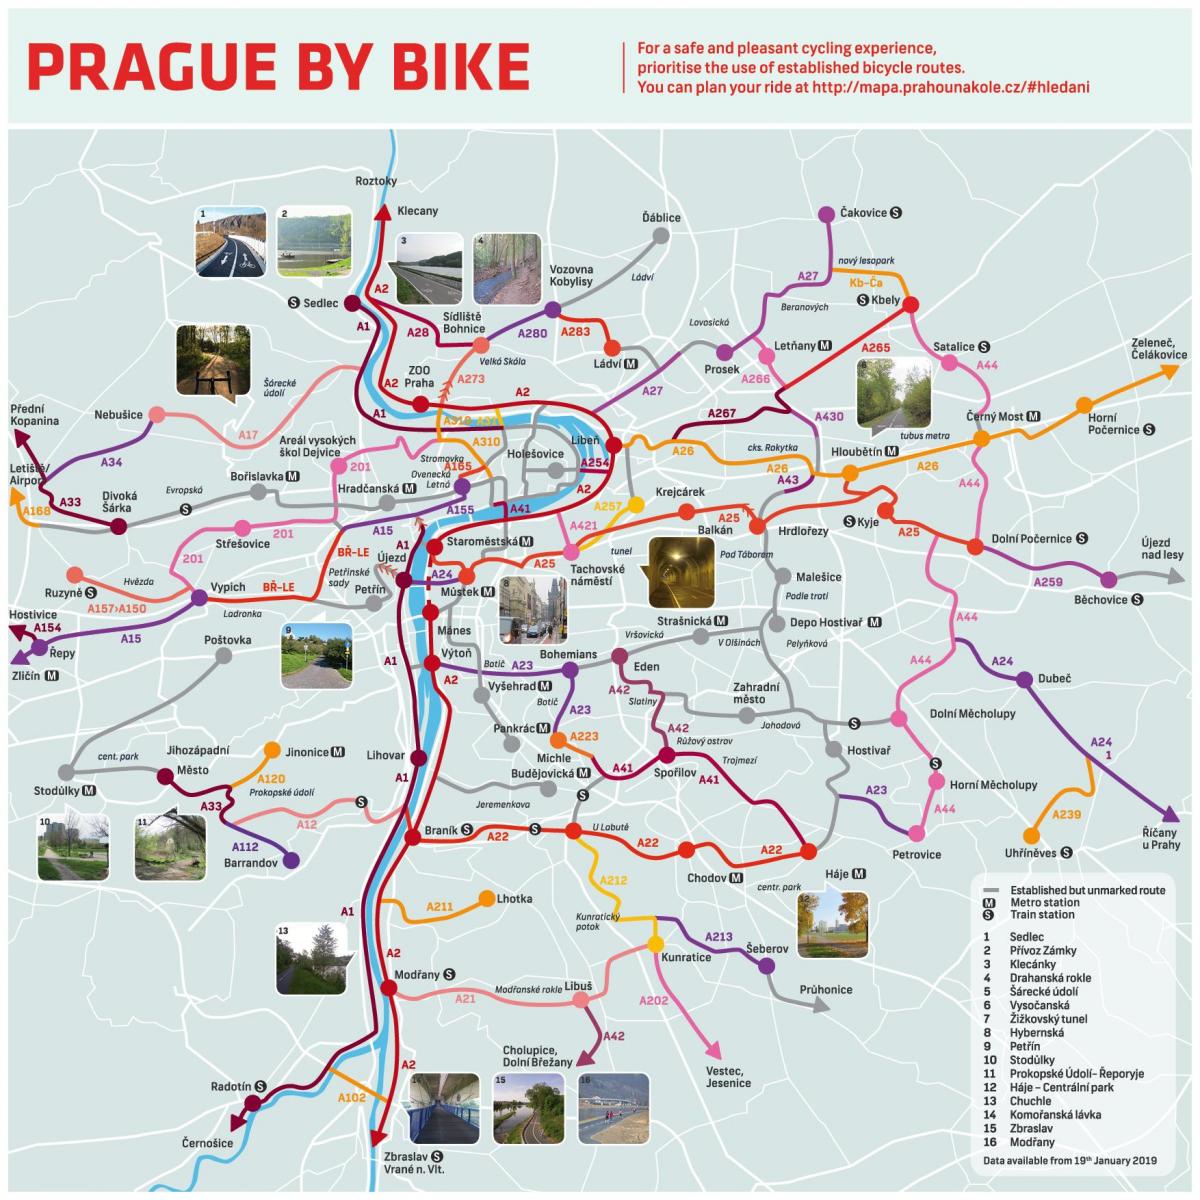 mapa de praga bicicleta